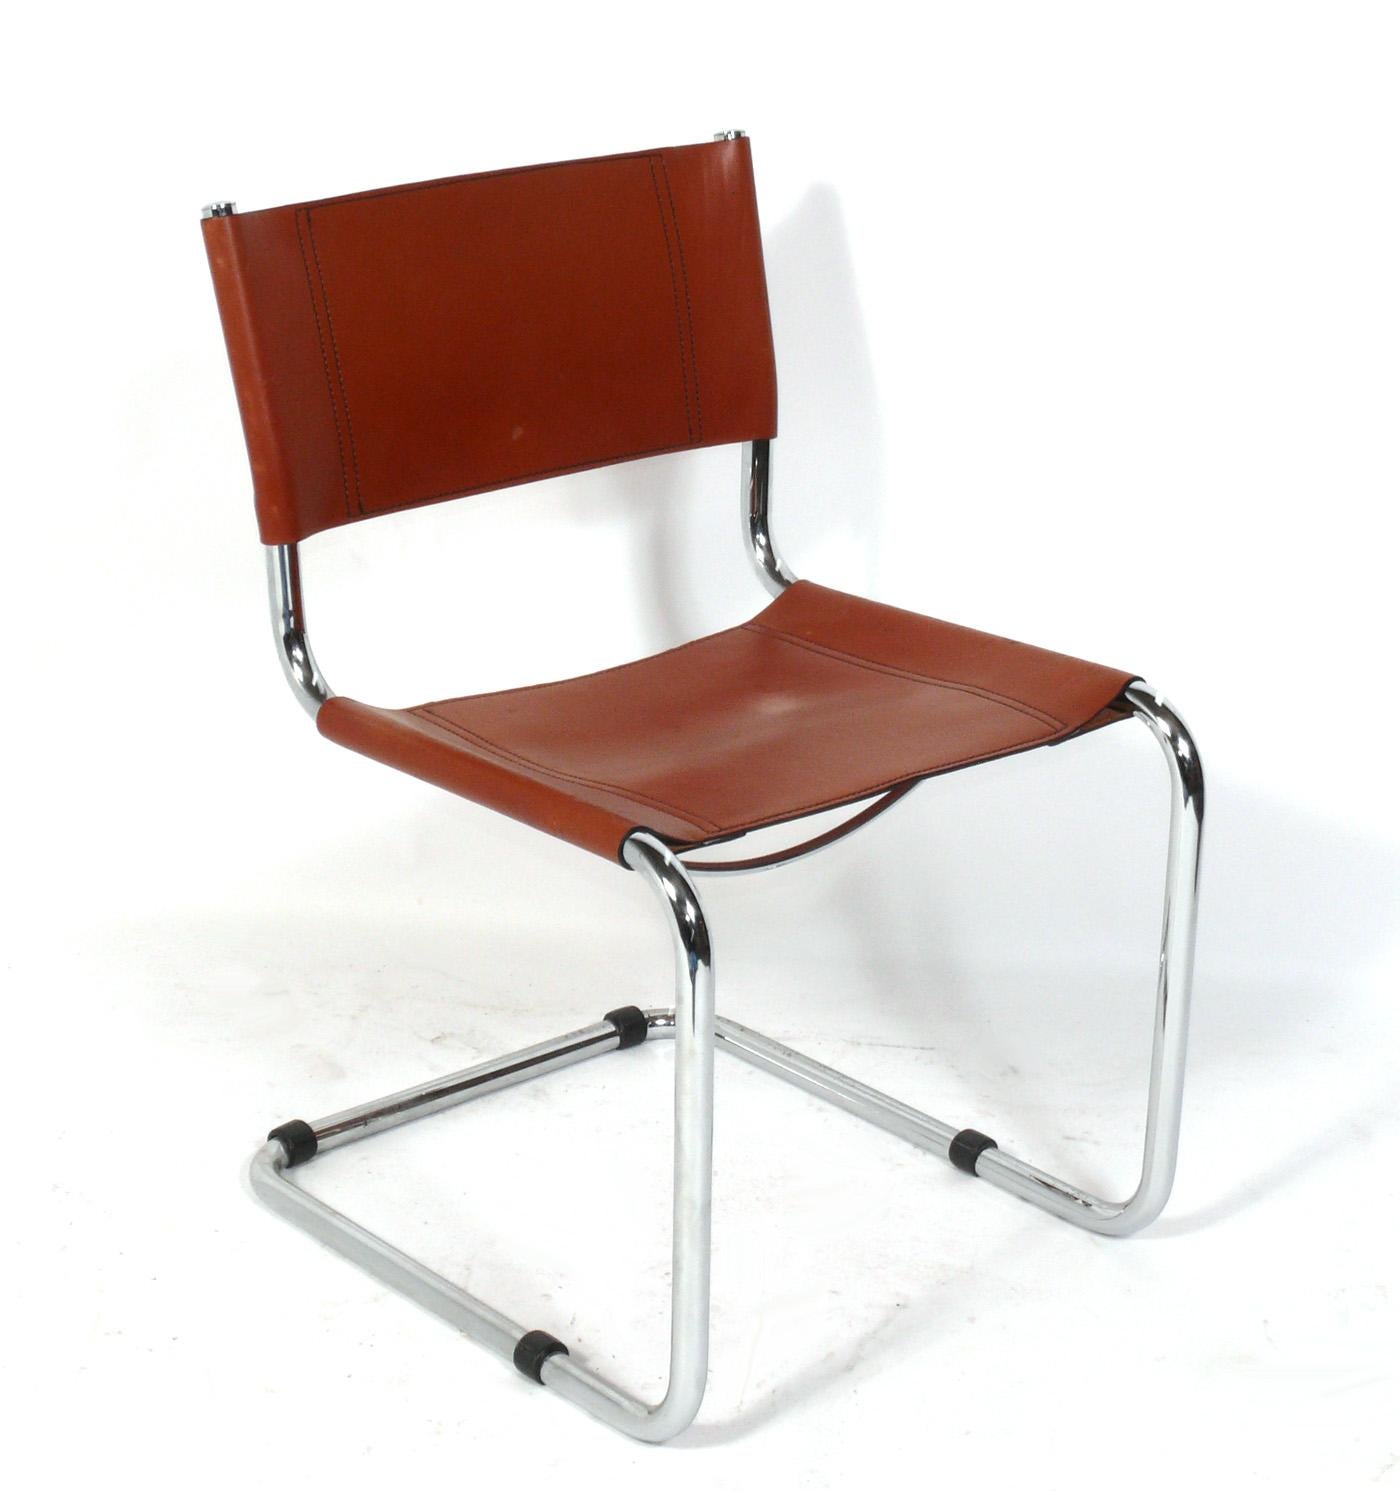 Satz von vier freitragenden Esszimmerstühlen aus cognacfarbenem Leder und Chrom, entworfen von Mart Stam für Thonet, ca. 1970er Jahre. Sie bewahren ihre warme Originalpatina.